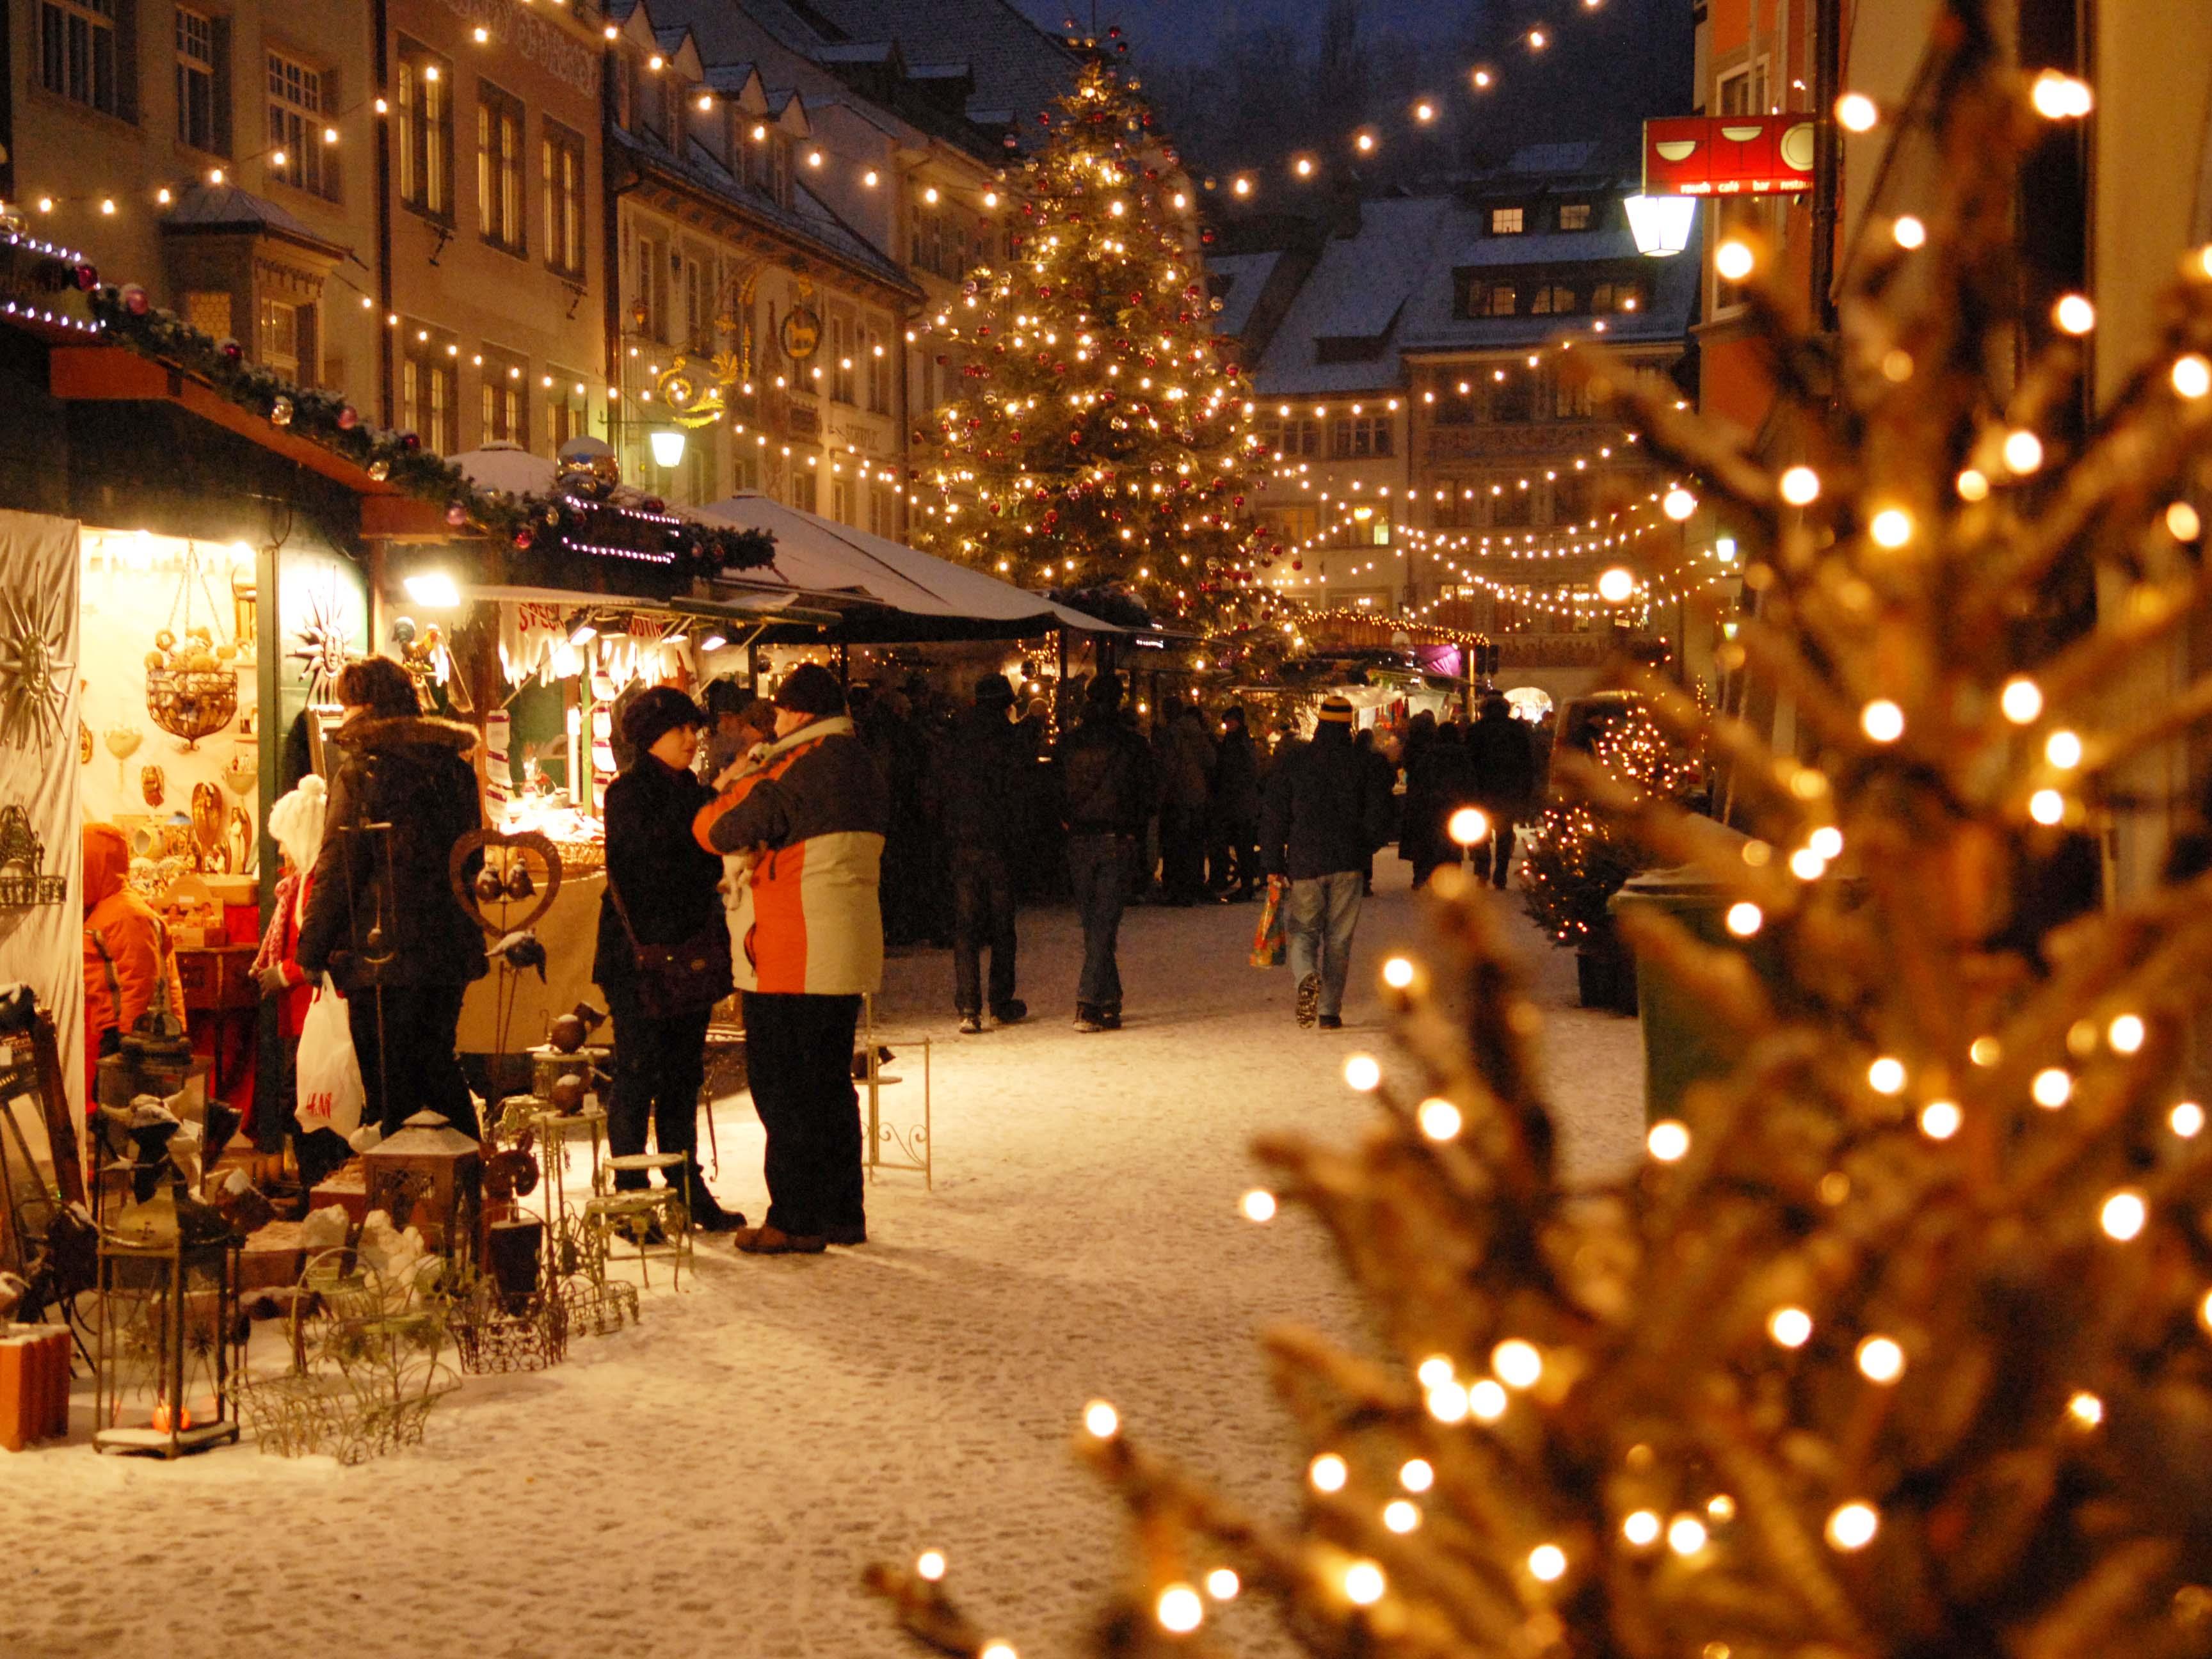 Der Weihnachtsmarkt wird in Feldkirch am Freitag, 28.11. um 17 Uhr eröffnet.